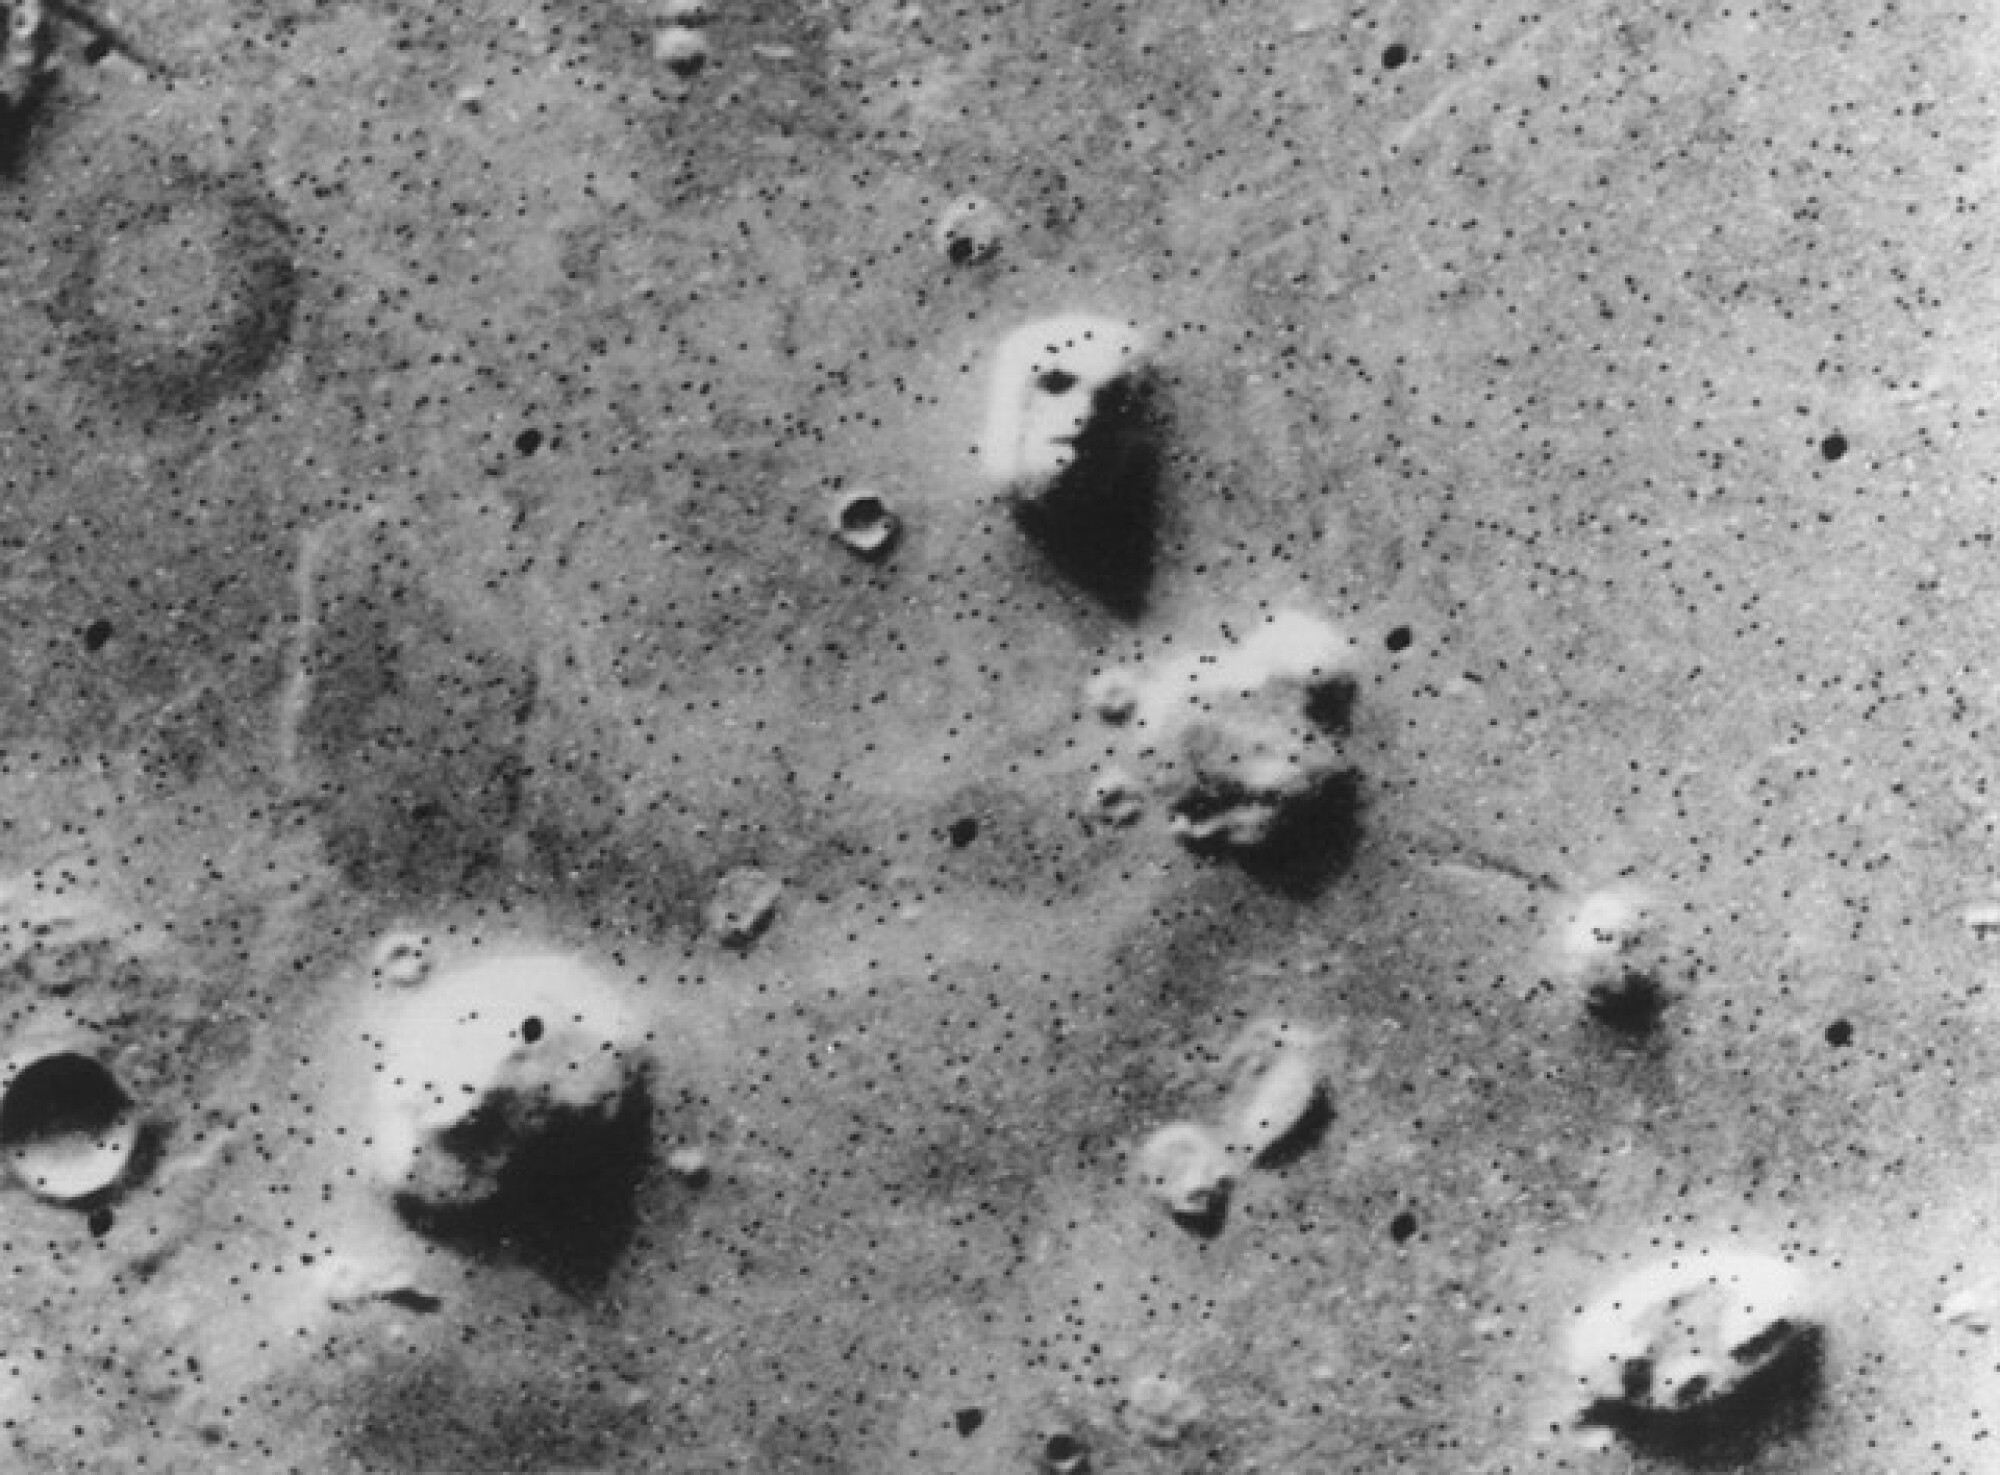 Un élément naturel sur Mars qui, d’après une image prise en 1976, ressemble à un visage ou à un crâne.